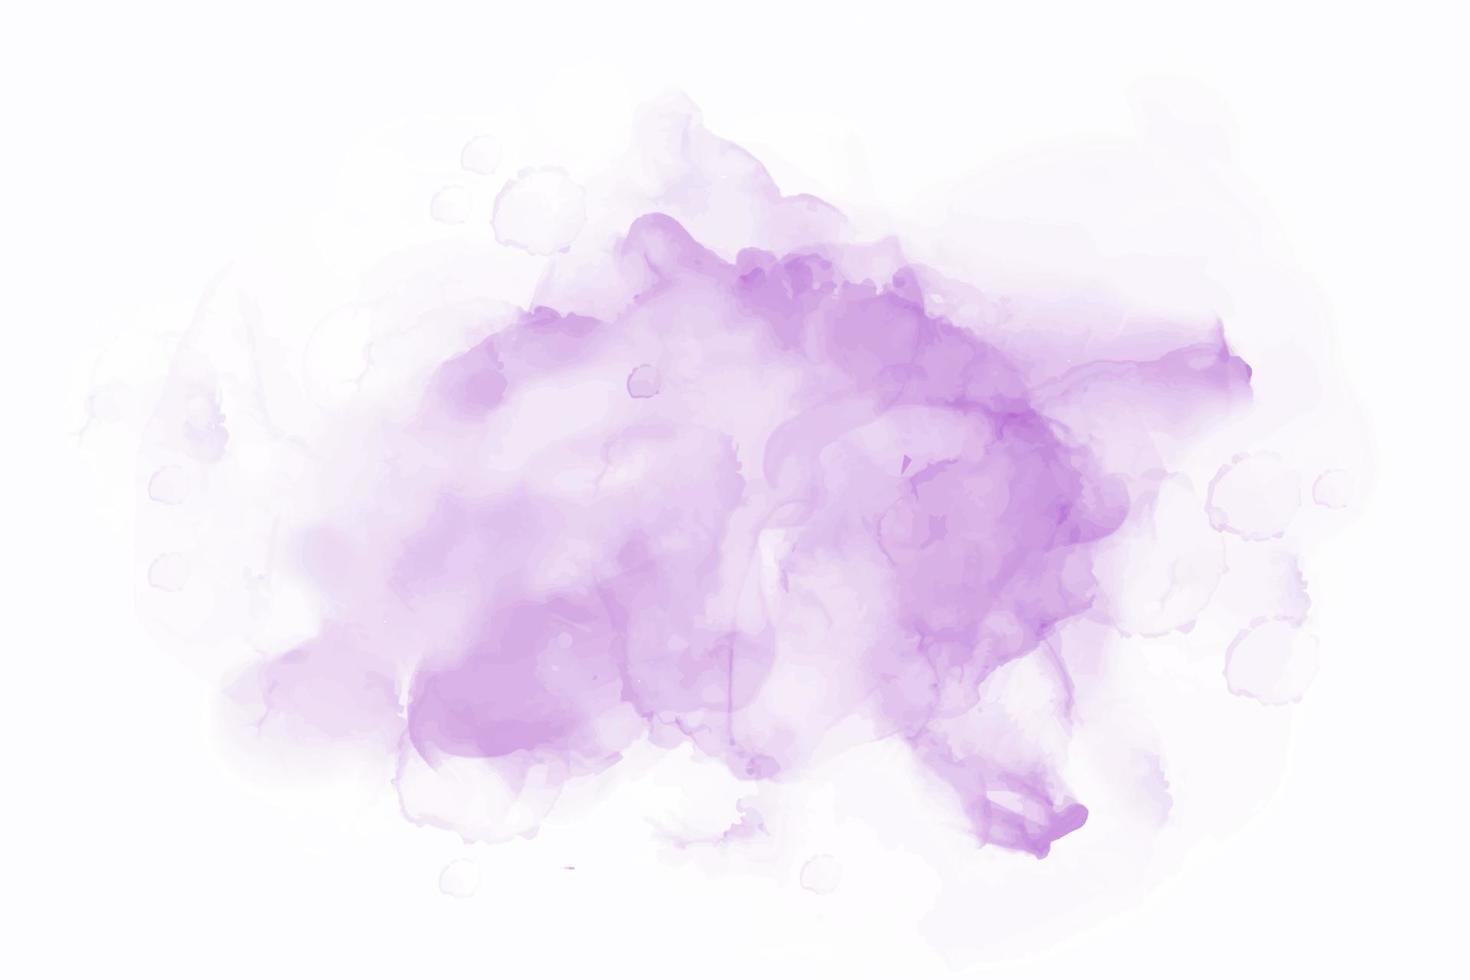 Carte rayée stylisée de vecteur de peinture pinceau aquarelle violet. aquarelle abstraite dessinés à la main papier texture liquide froid fond de couleur